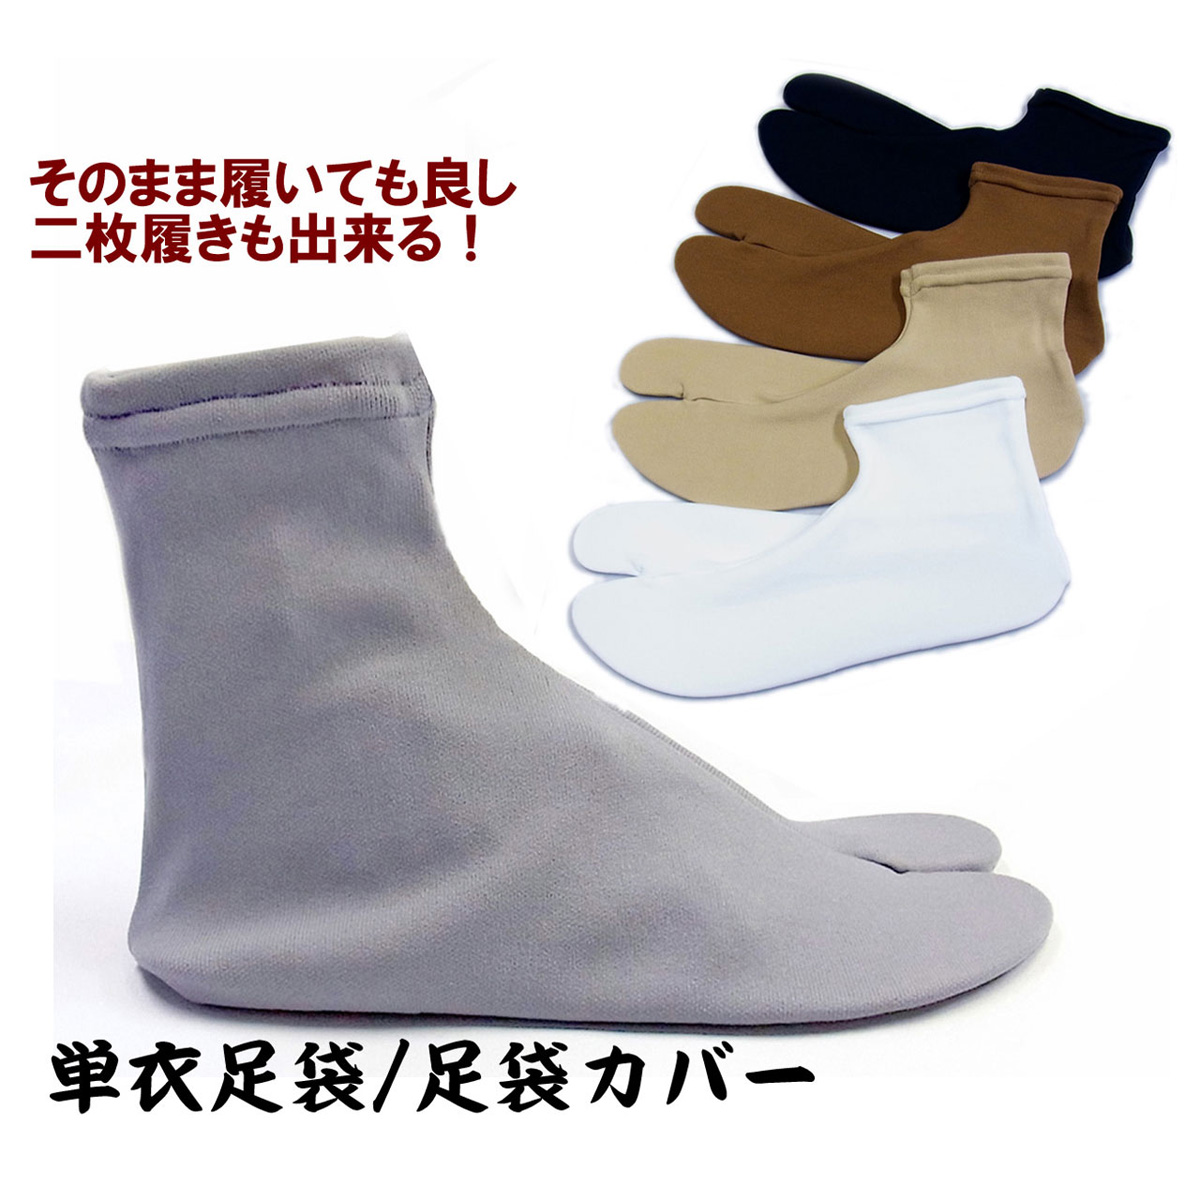 足袋 メンズ ストレッチ 足袋カバー 日本製 (7966) | 男着物の加藤商店《公式》|男性着物専門店